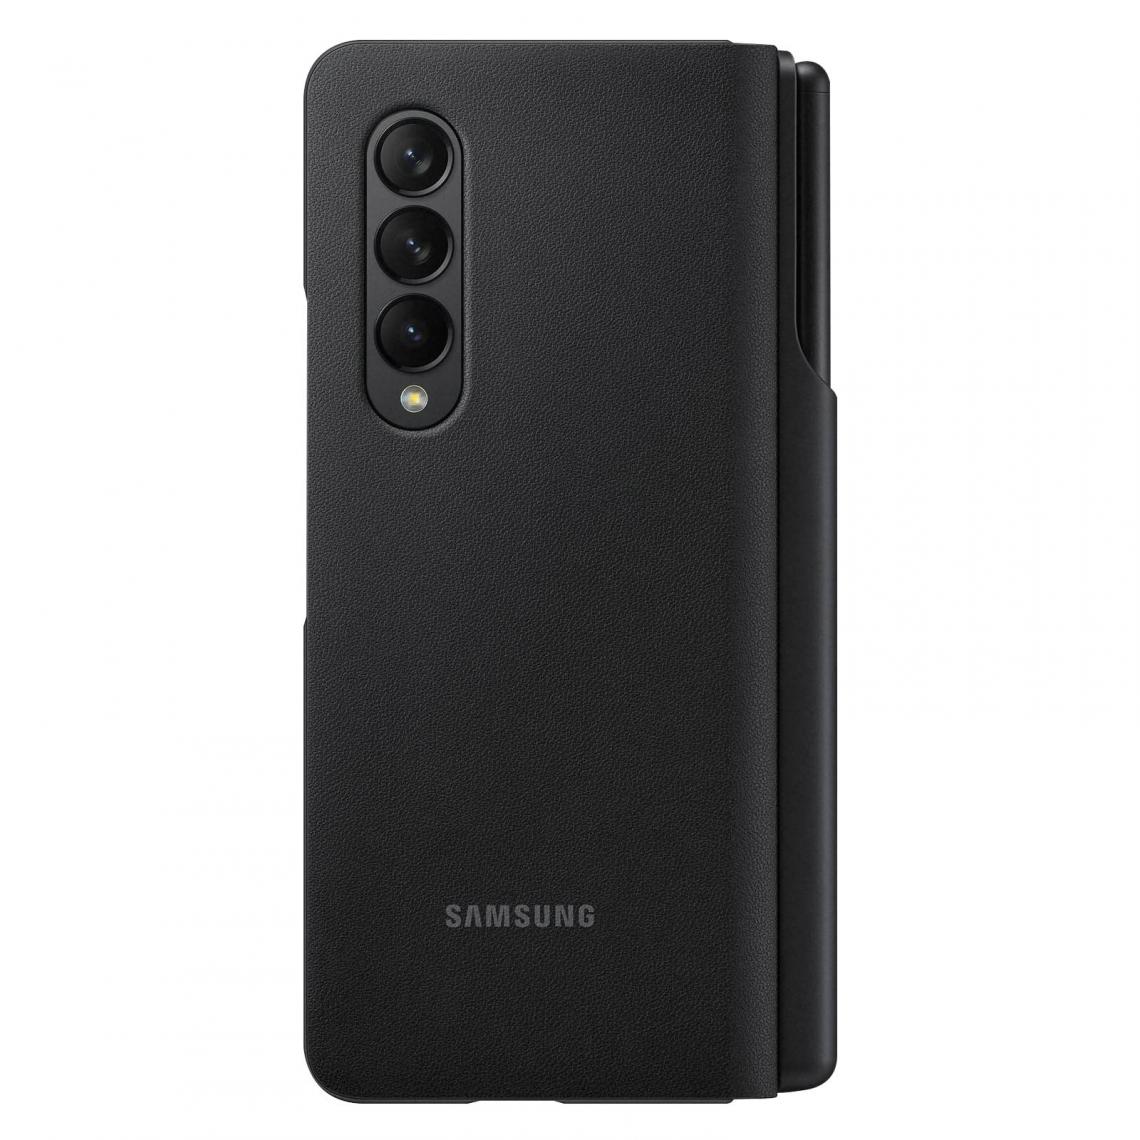 Samsung - Étui Samsung Galaxy Z Fold 3 Original - Coque, étui smartphone